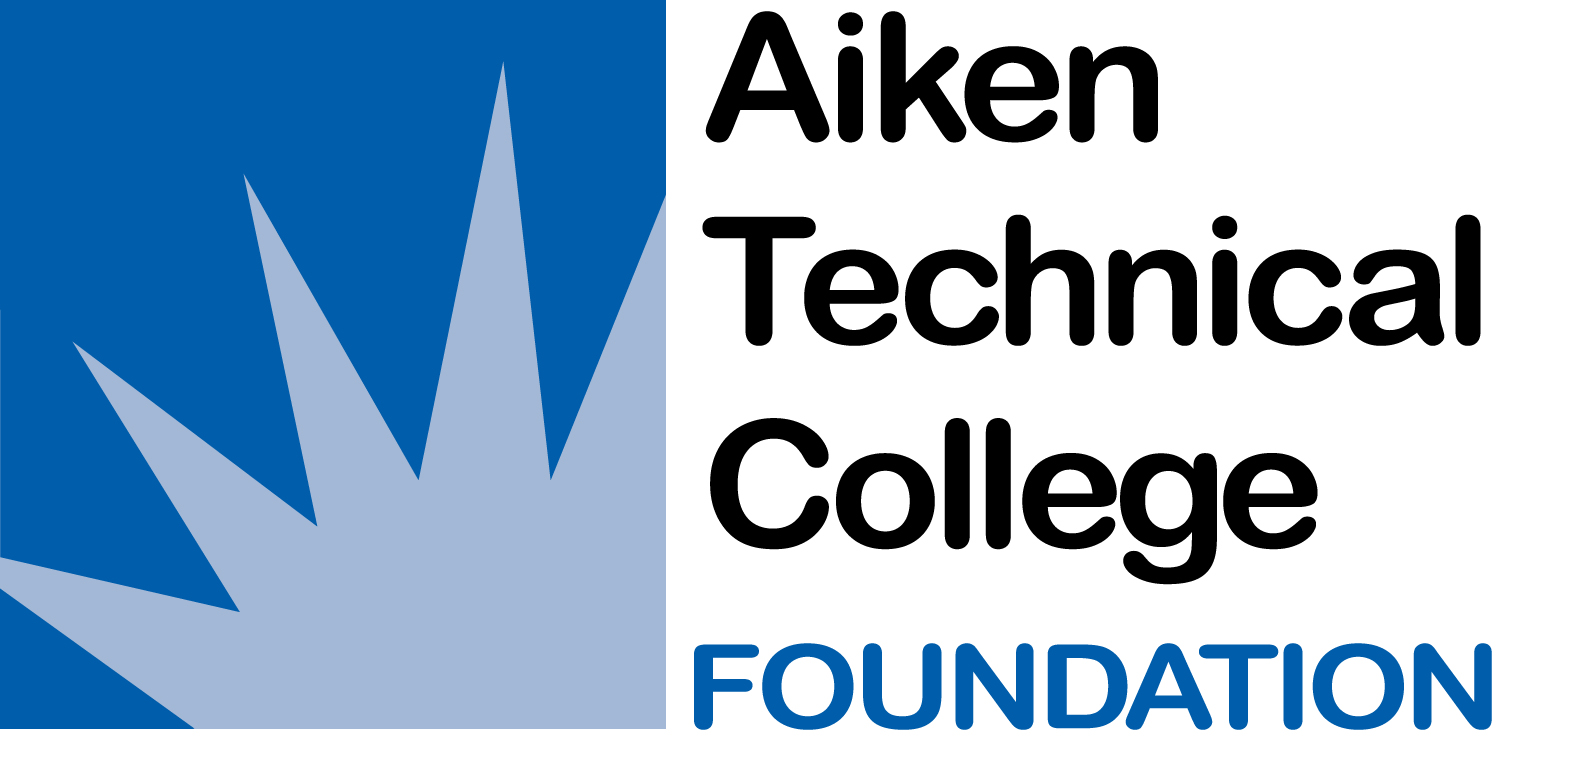 Aiken Technical College Foundation